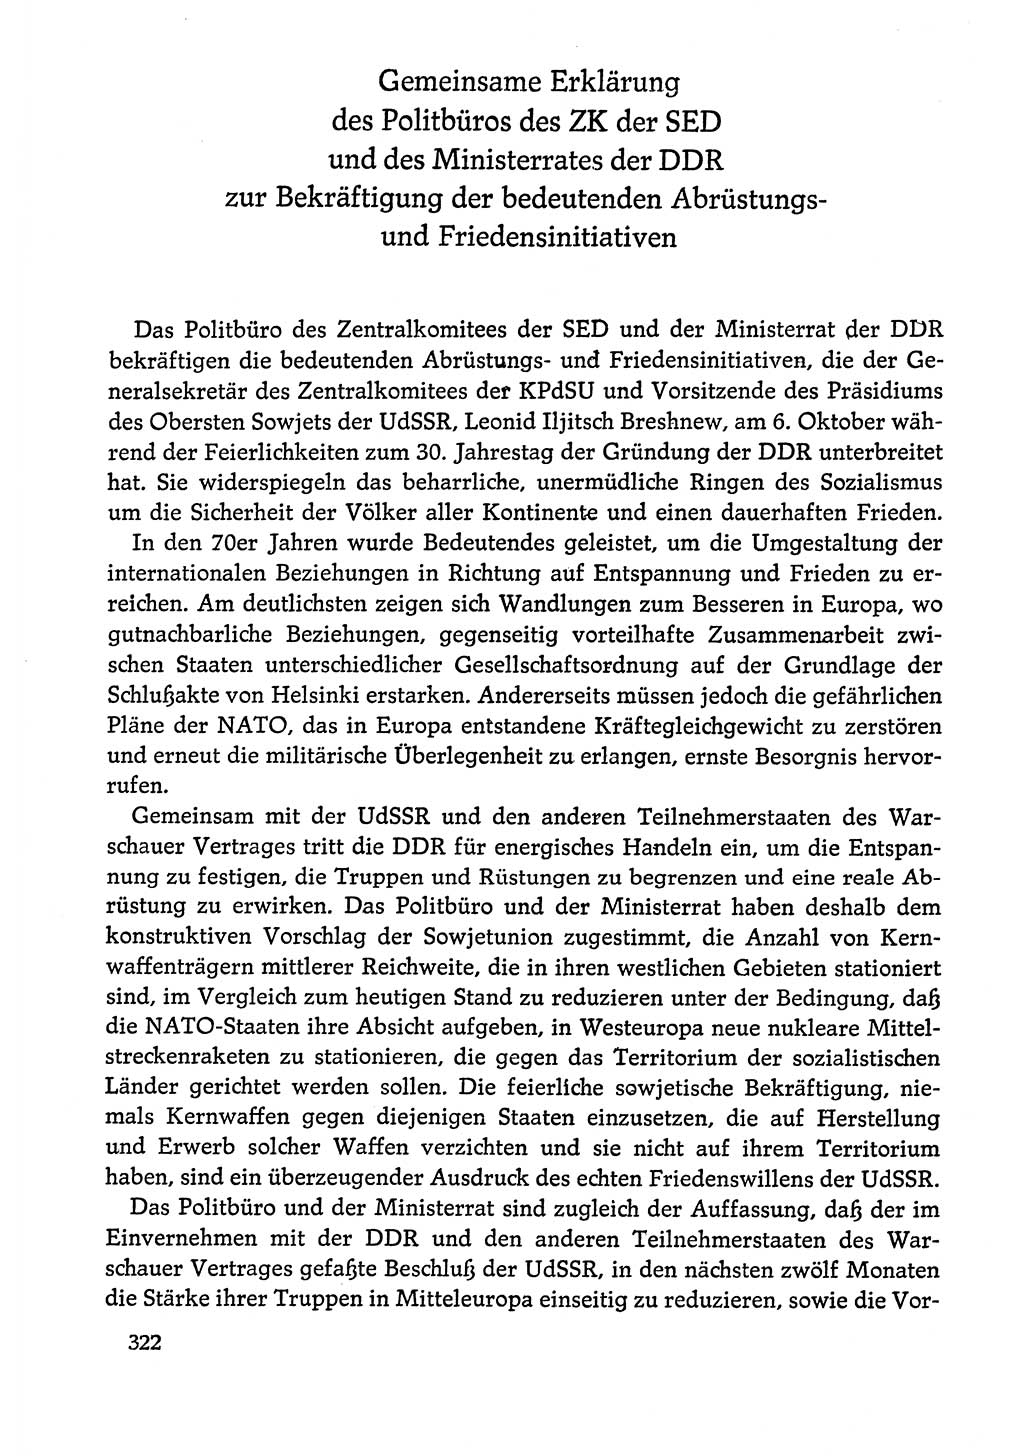 Dokumente der Sozialistischen Einheitspartei Deutschlands (SED) [Deutsche Demokratische Republik (DDR)] 1978-1979, Seite 322 (Dok. SED DDR 1978-1979, S. 322)